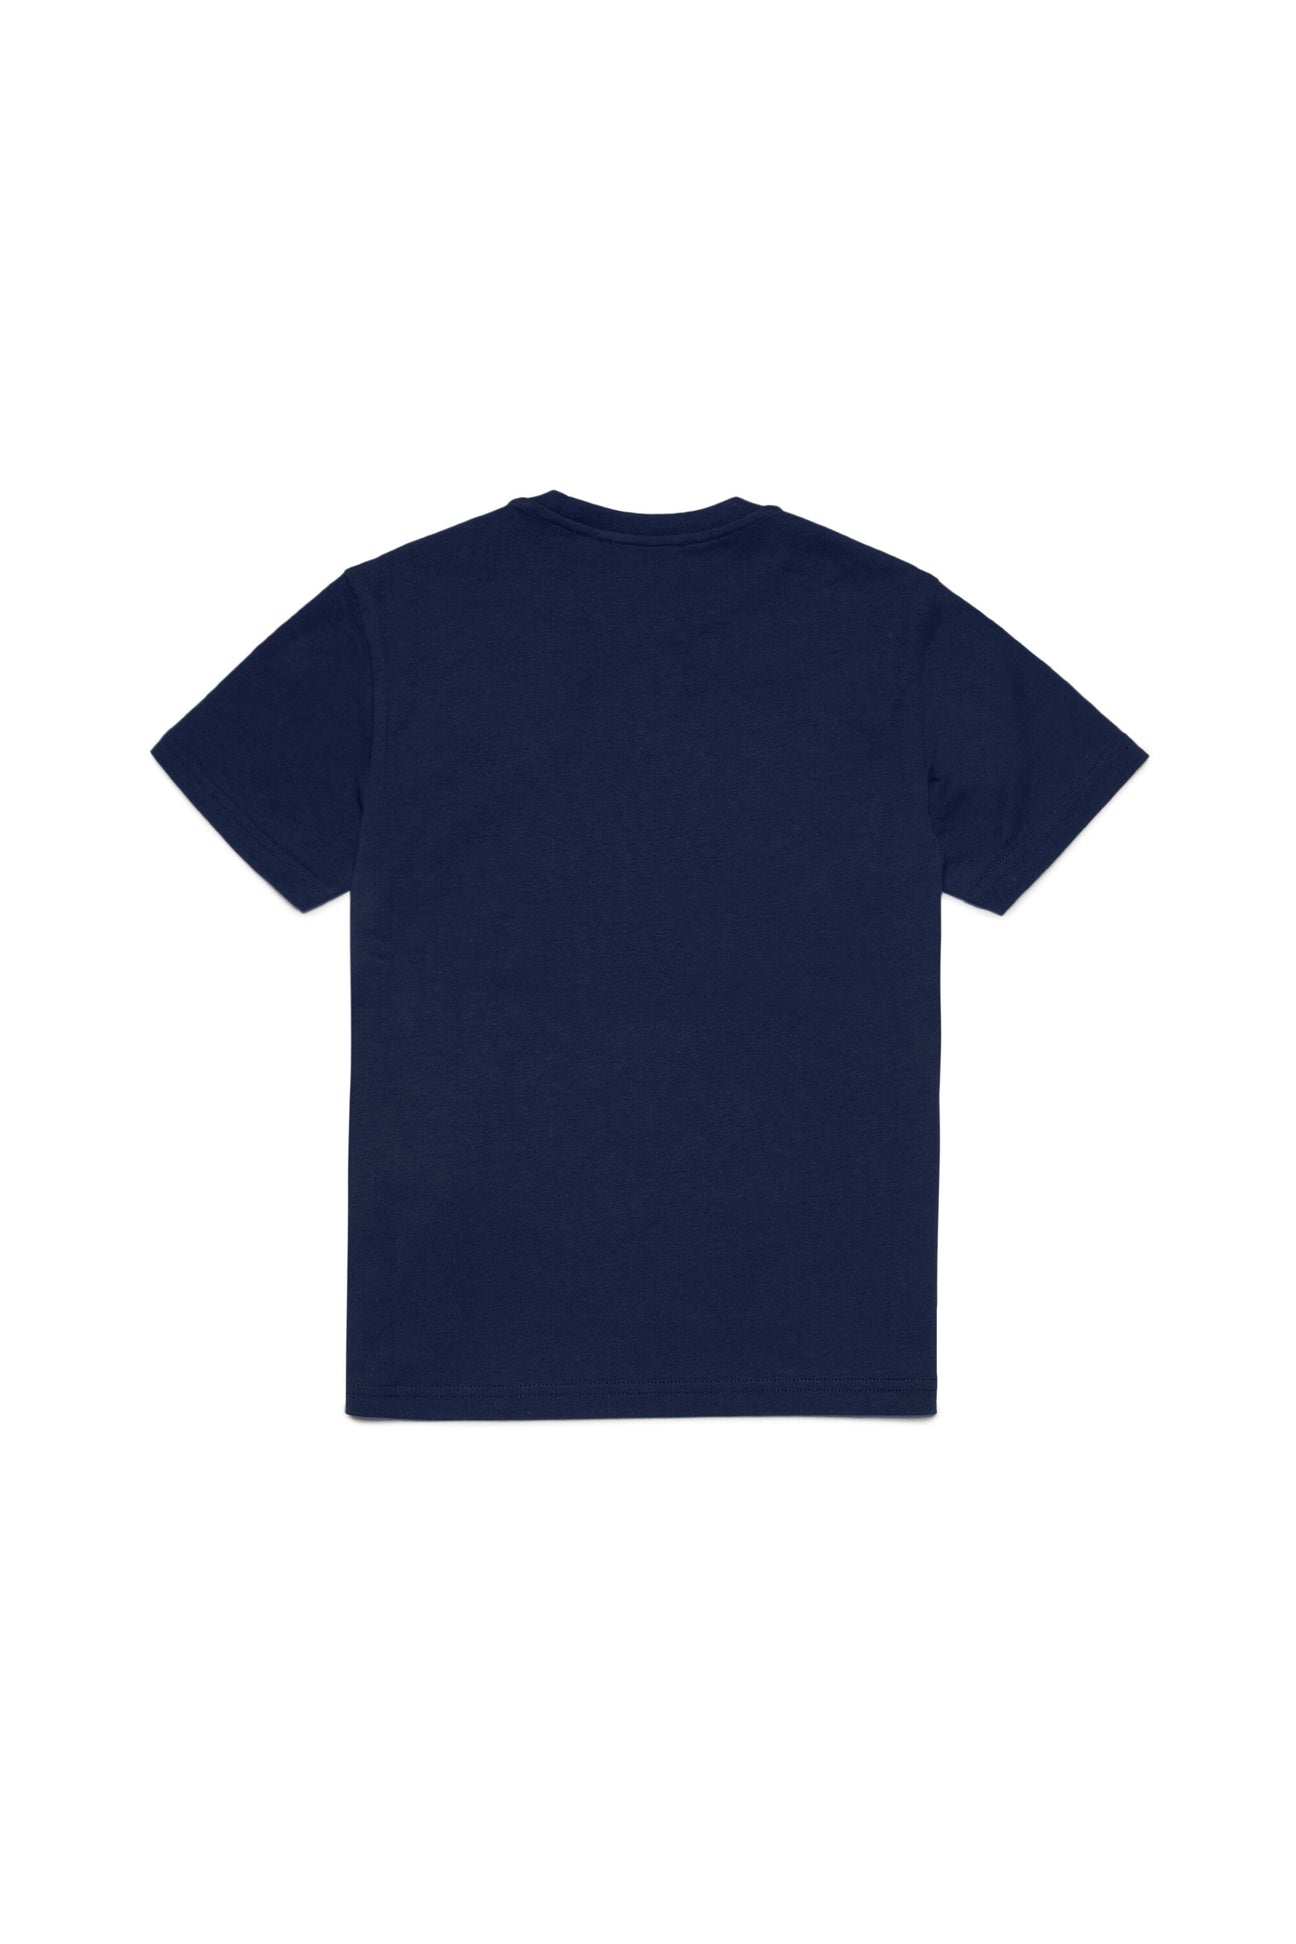 Camiseta de cuello redondo en jersey de algodón con hoja pequeña Camiseta de cuello redondo en jersey de algodón con hoja pequeña